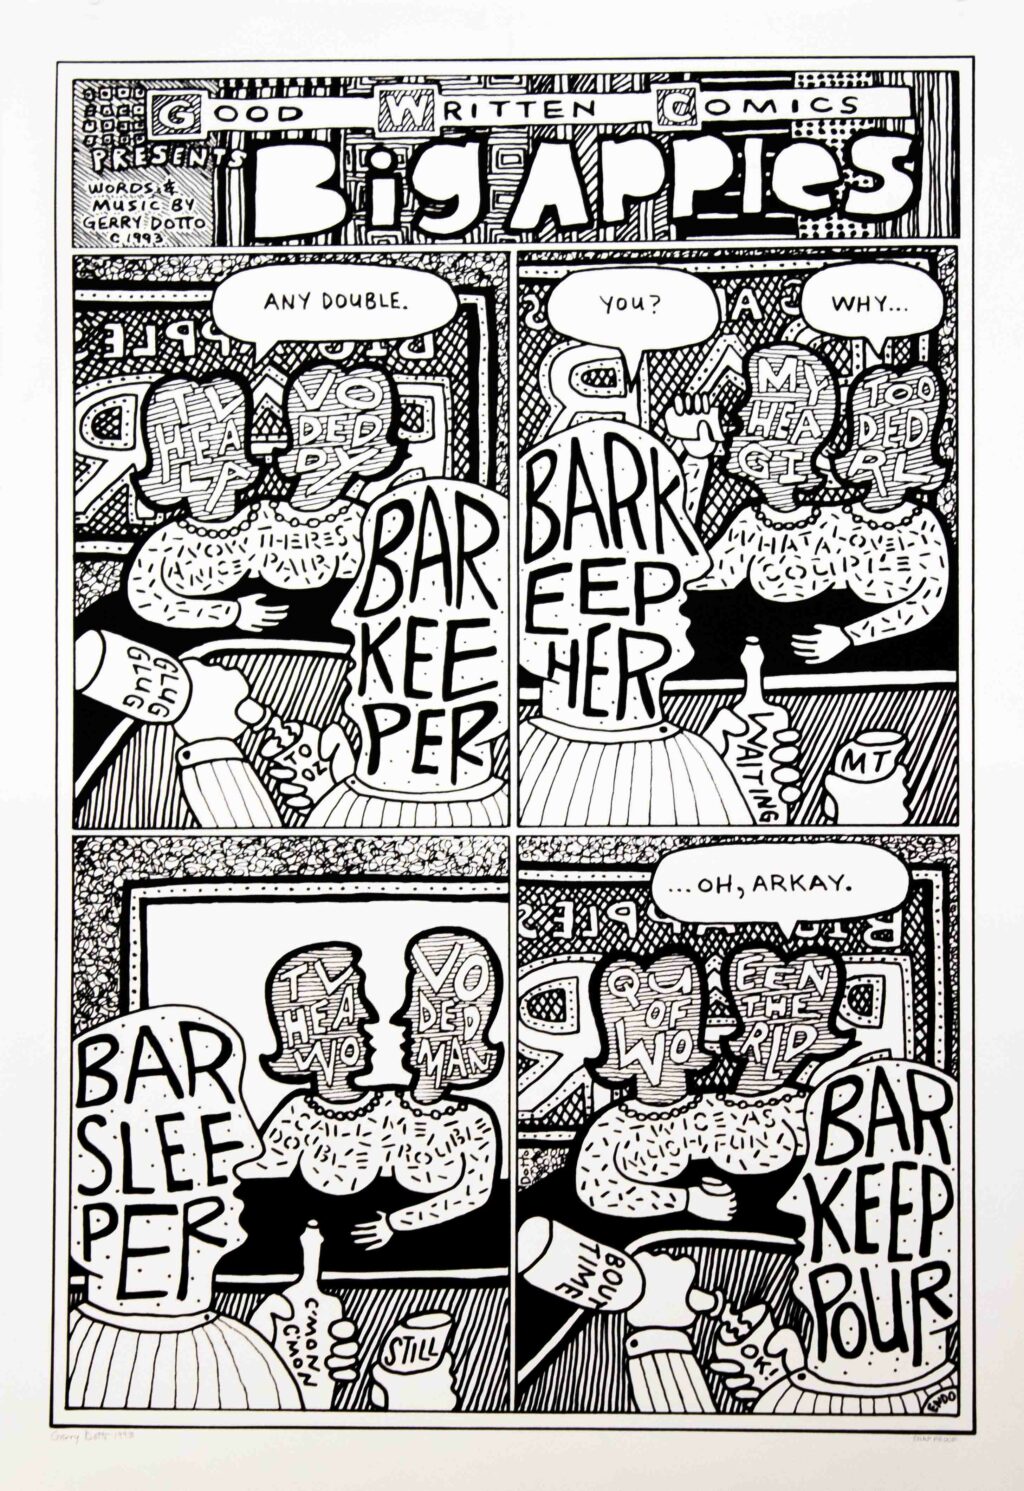 Gerry Dotto Good Written Comics 1993.002.01